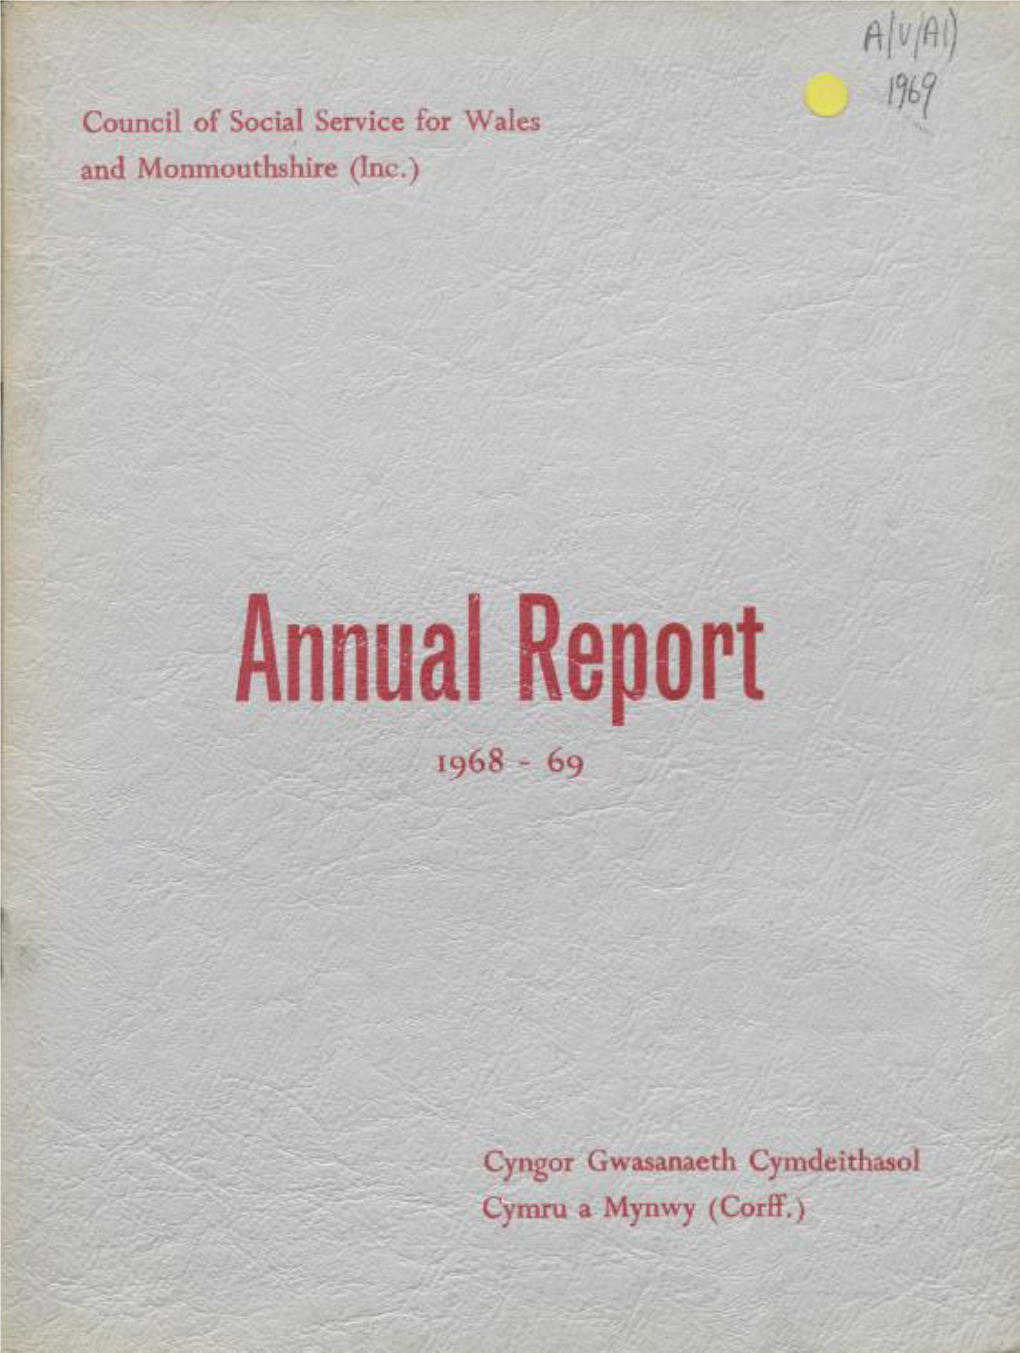 Wcva Annualreport 1968-1969.Pdf